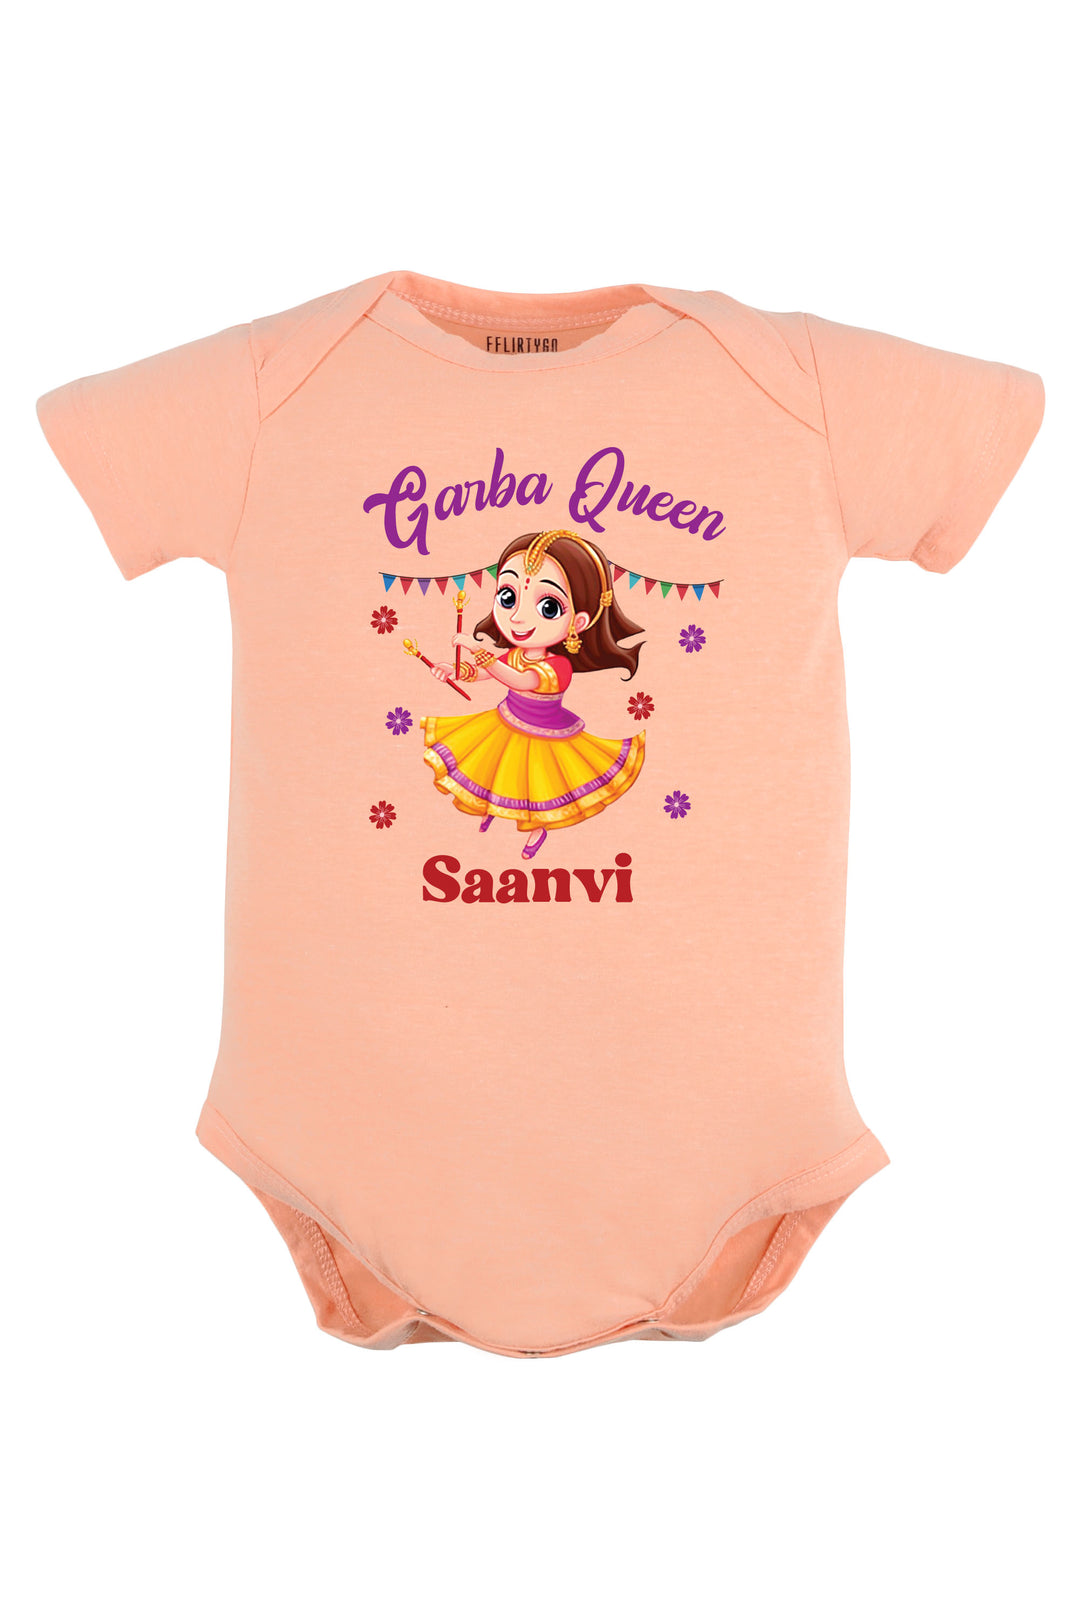 Garba Queen Baby Romper | Onesies w/ Custom Name